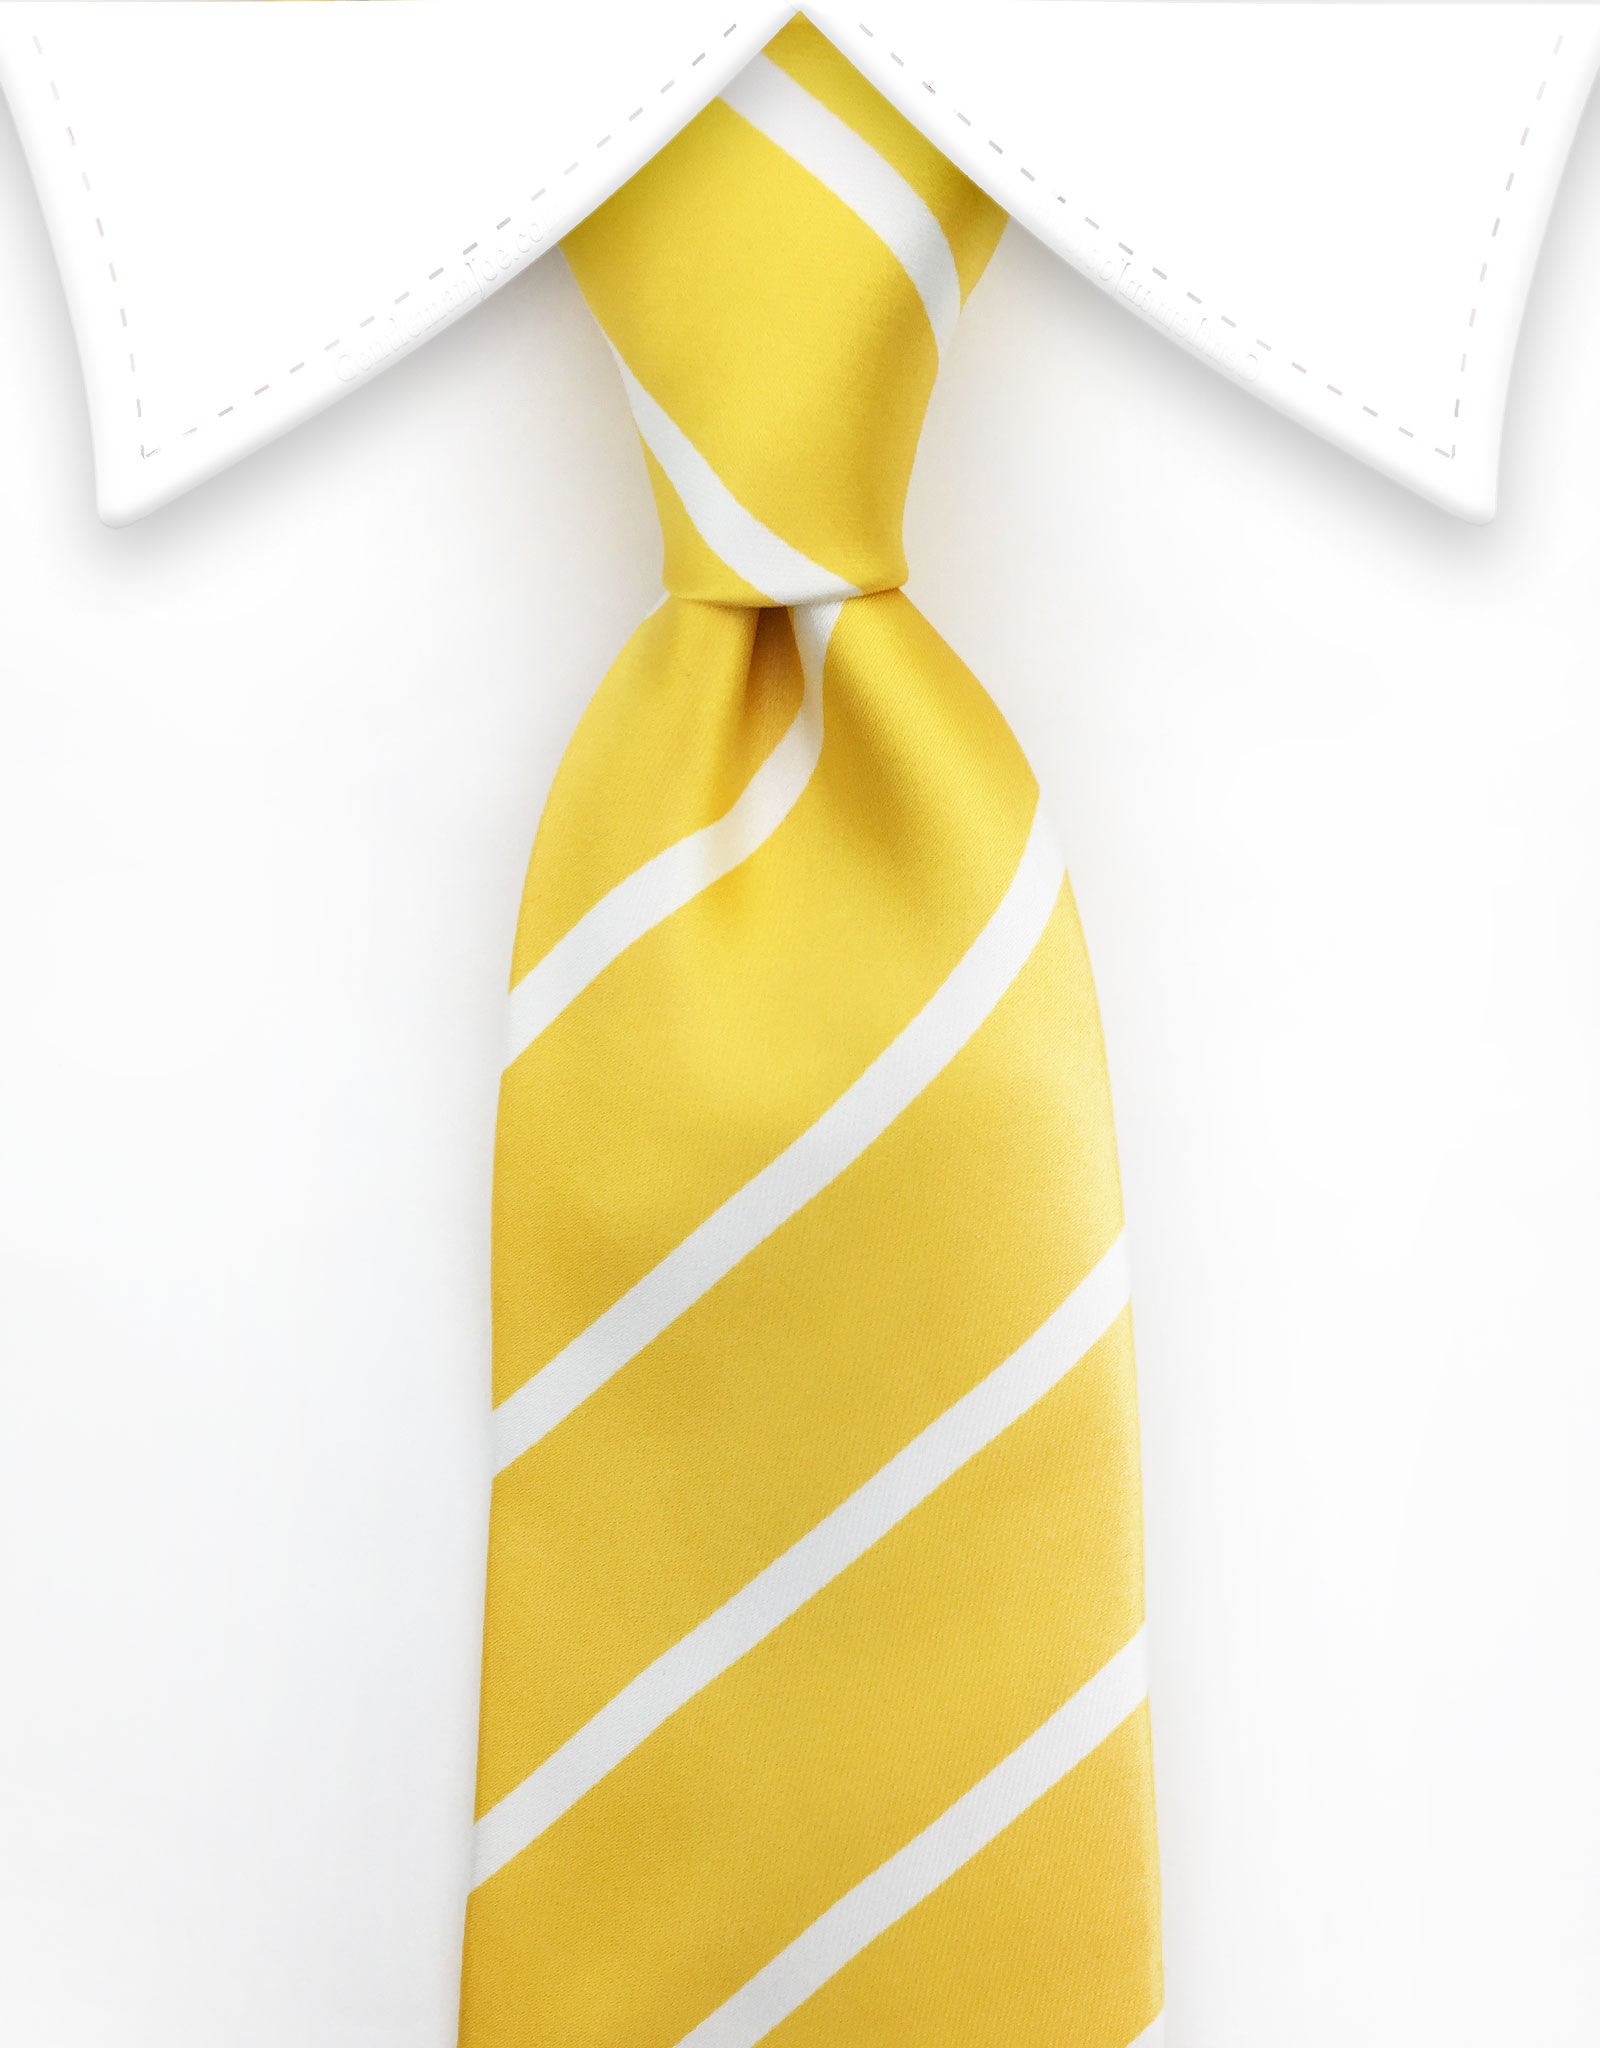 Yellow Tie with white stripes